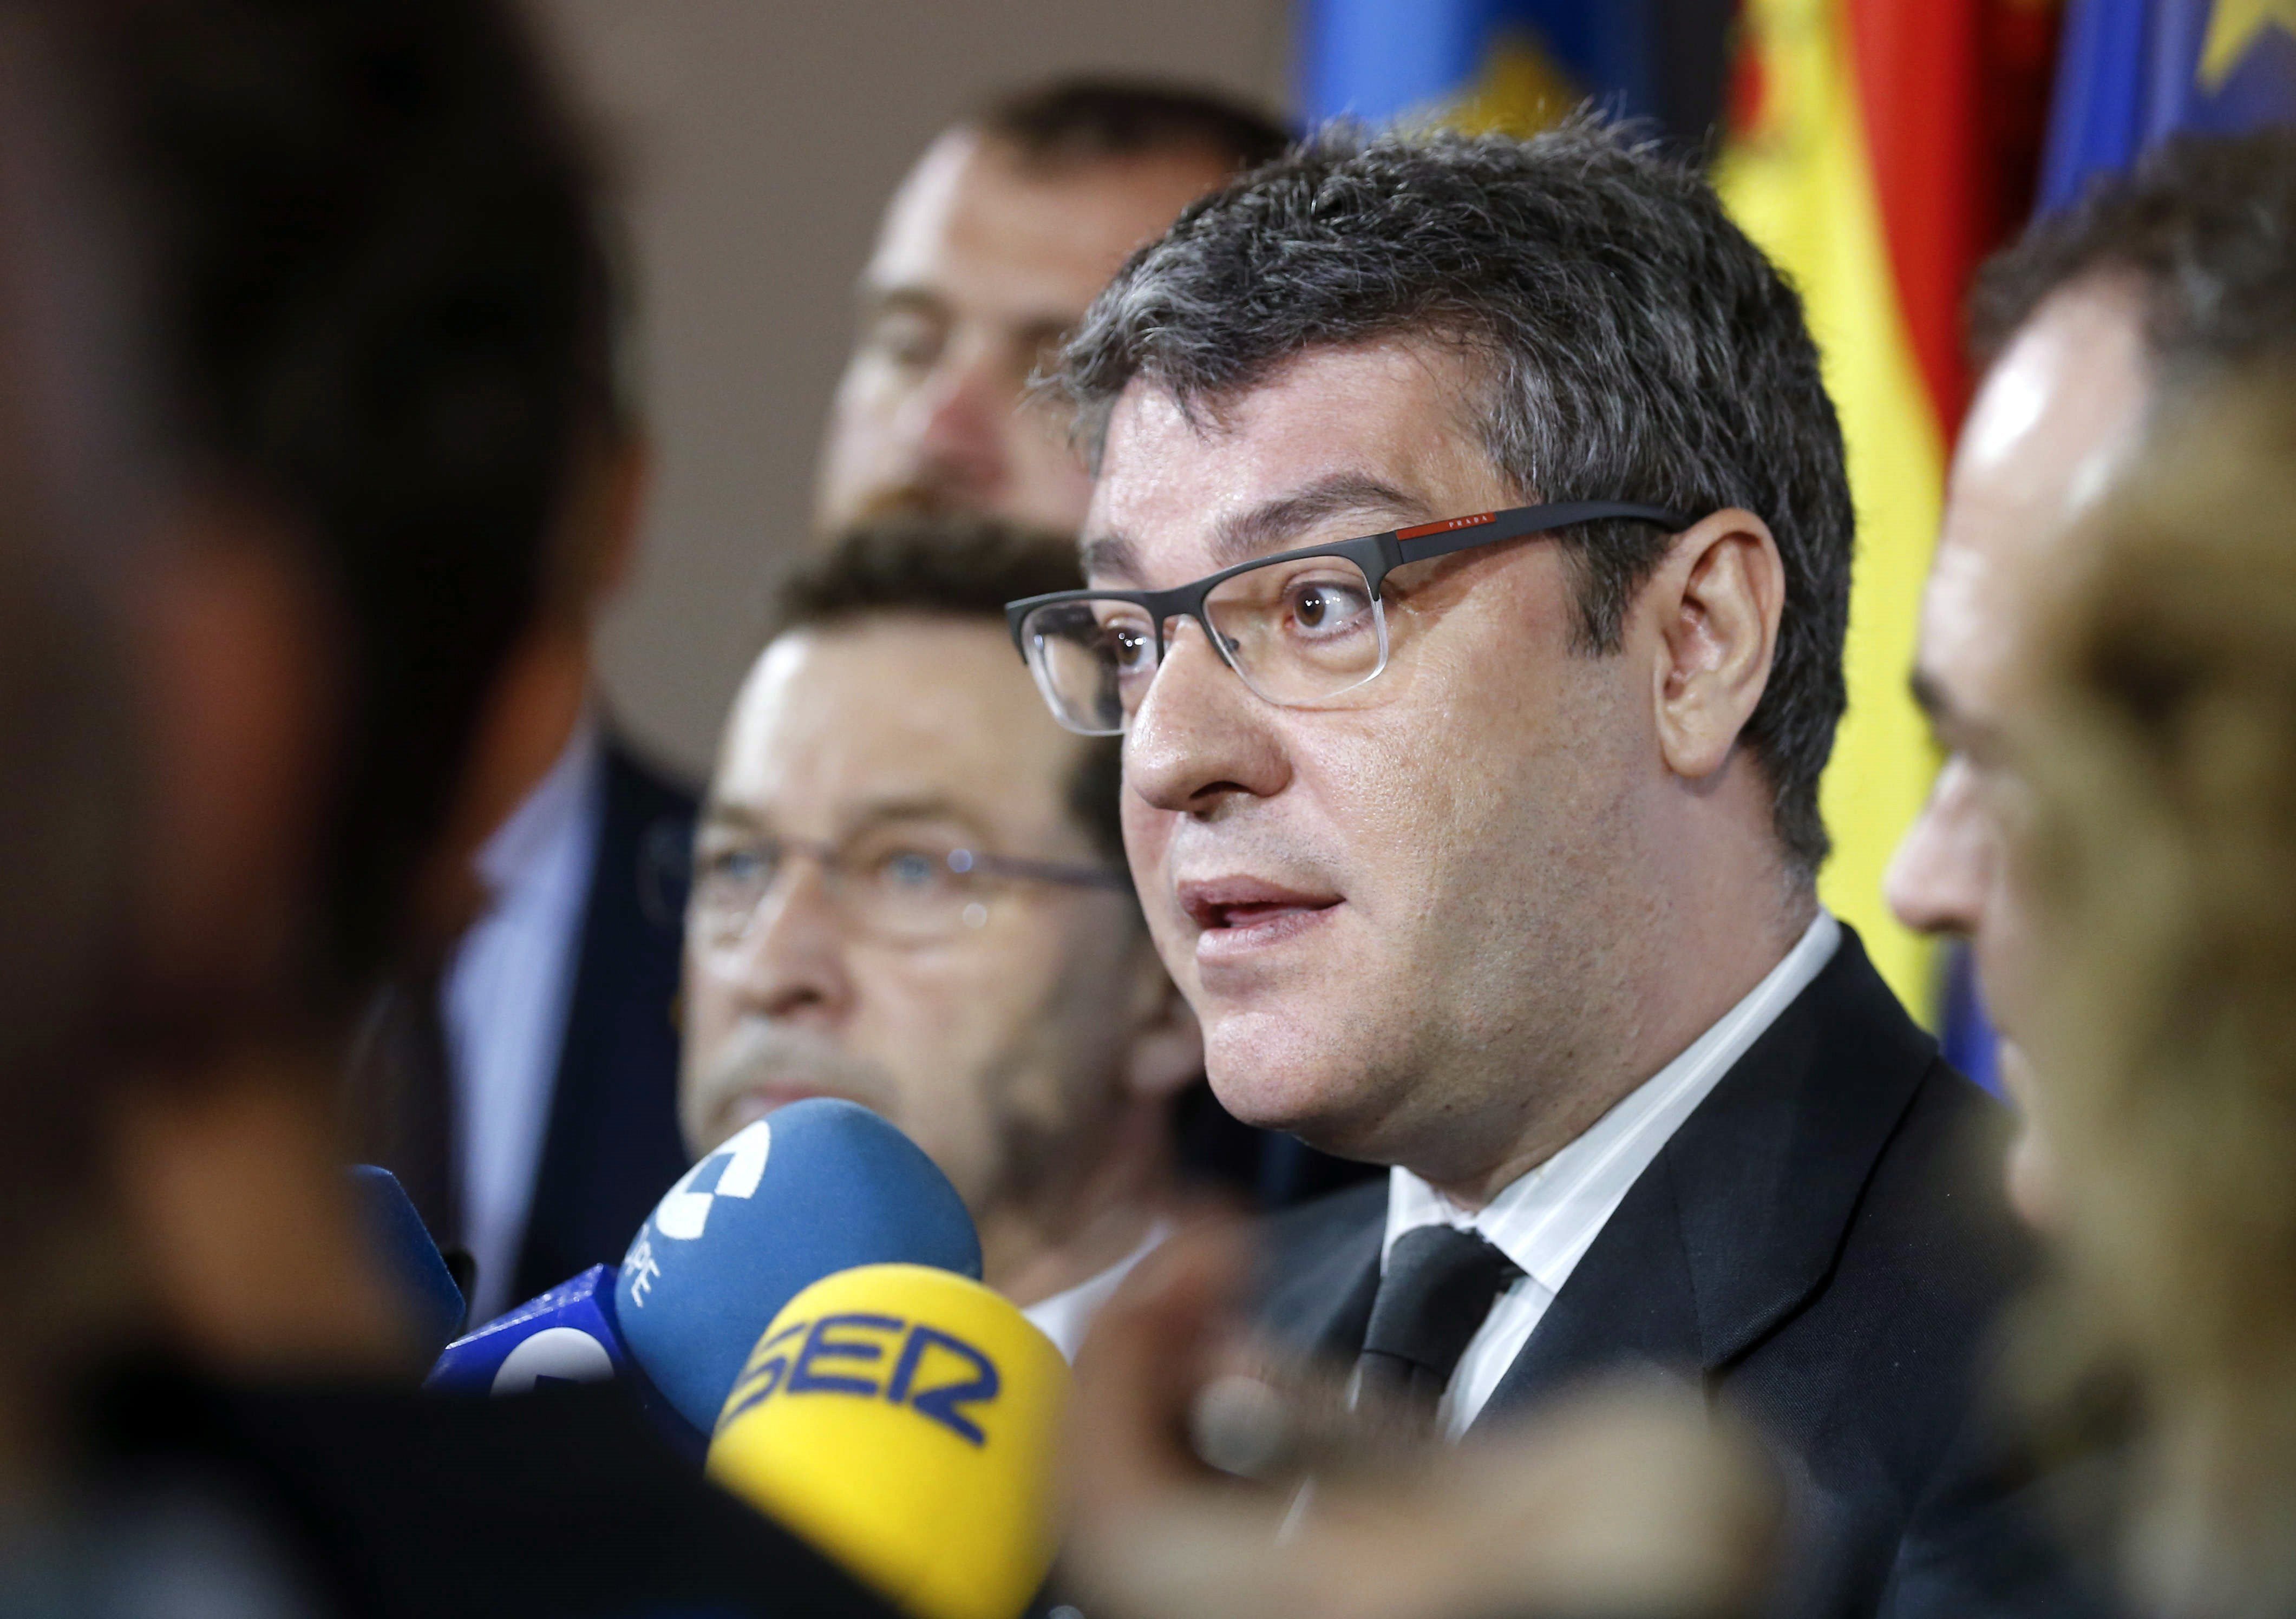 El gobierno del PP quiere hacer un lavado de cara a Catalunya después del 1-O